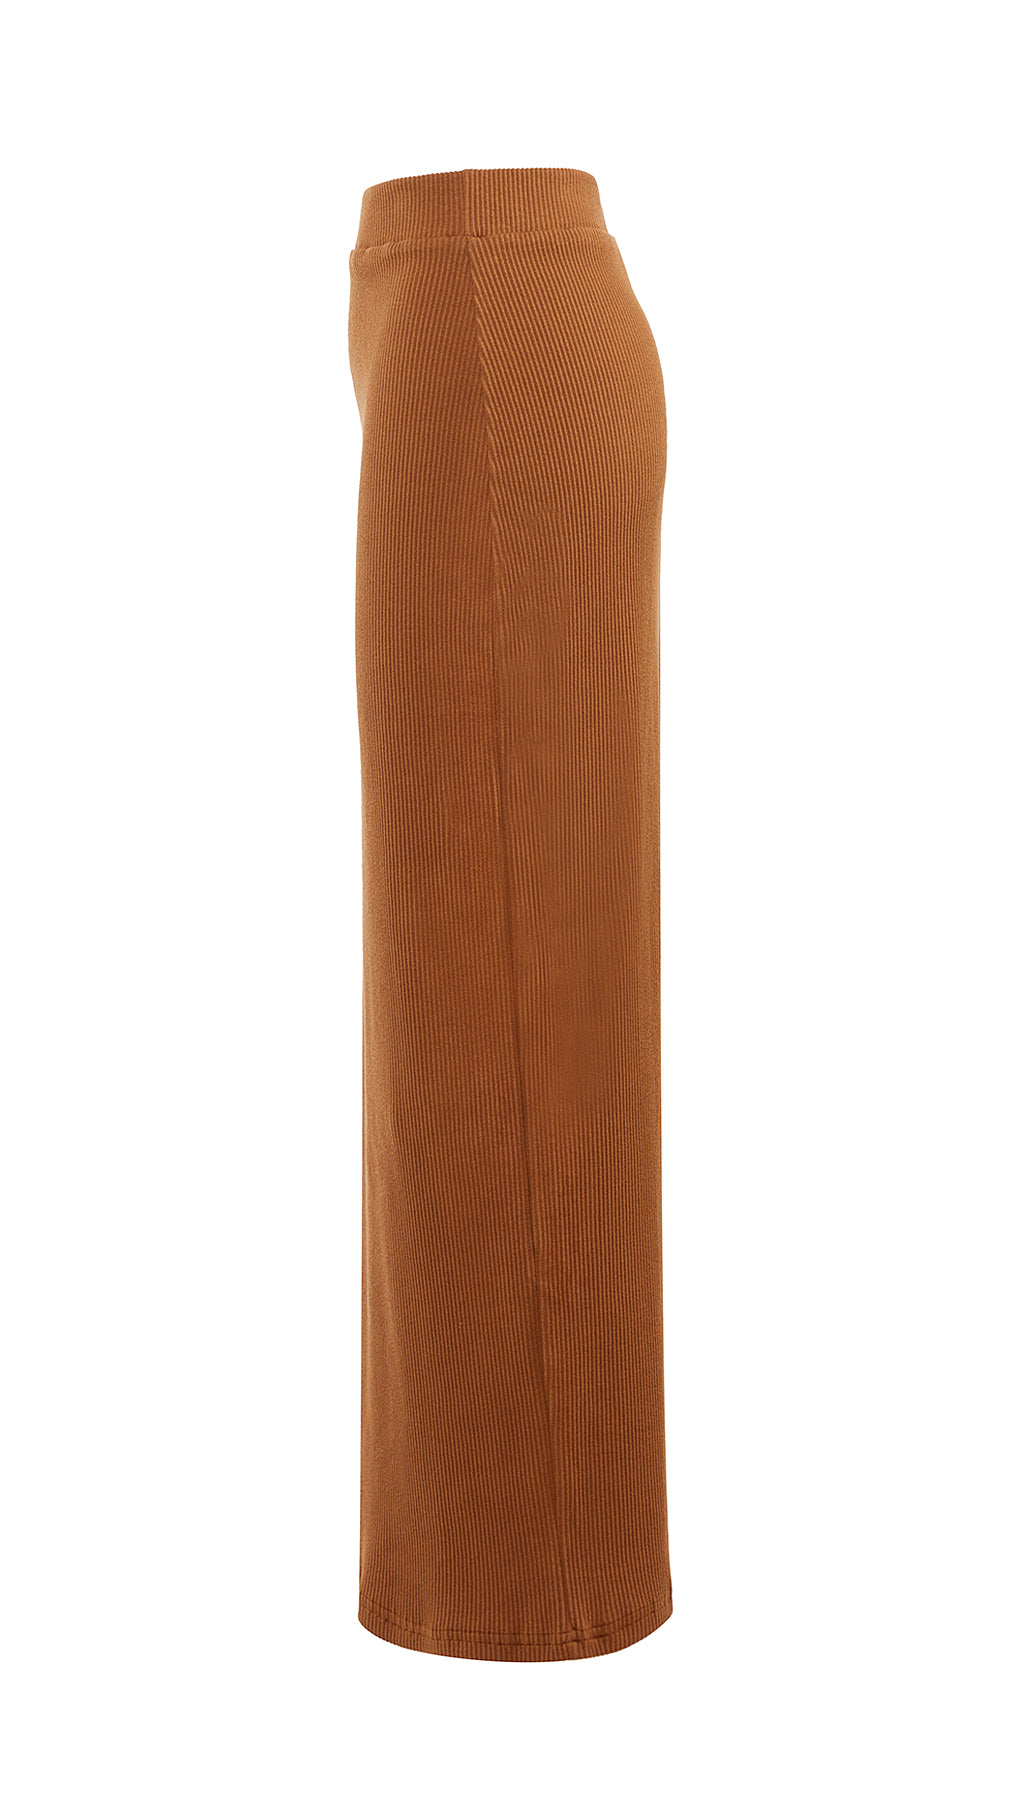 Modish Pencil Skirt -  Modelle